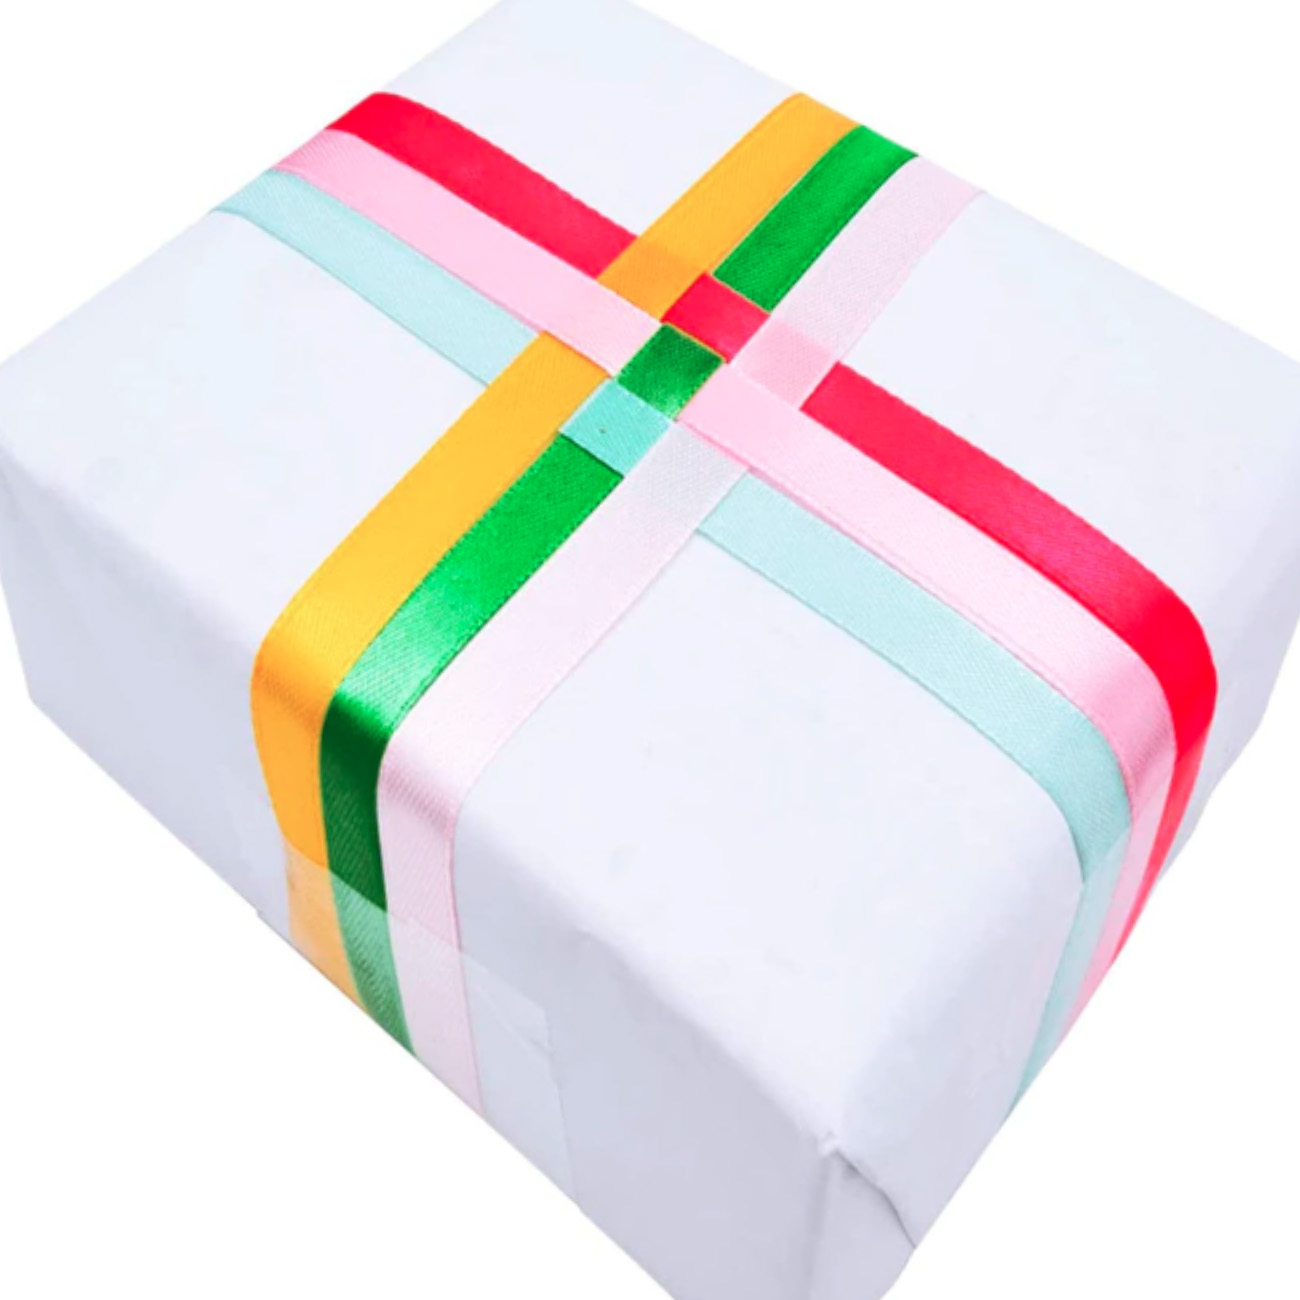 Примеры использования атласных лент в упаковке подарков